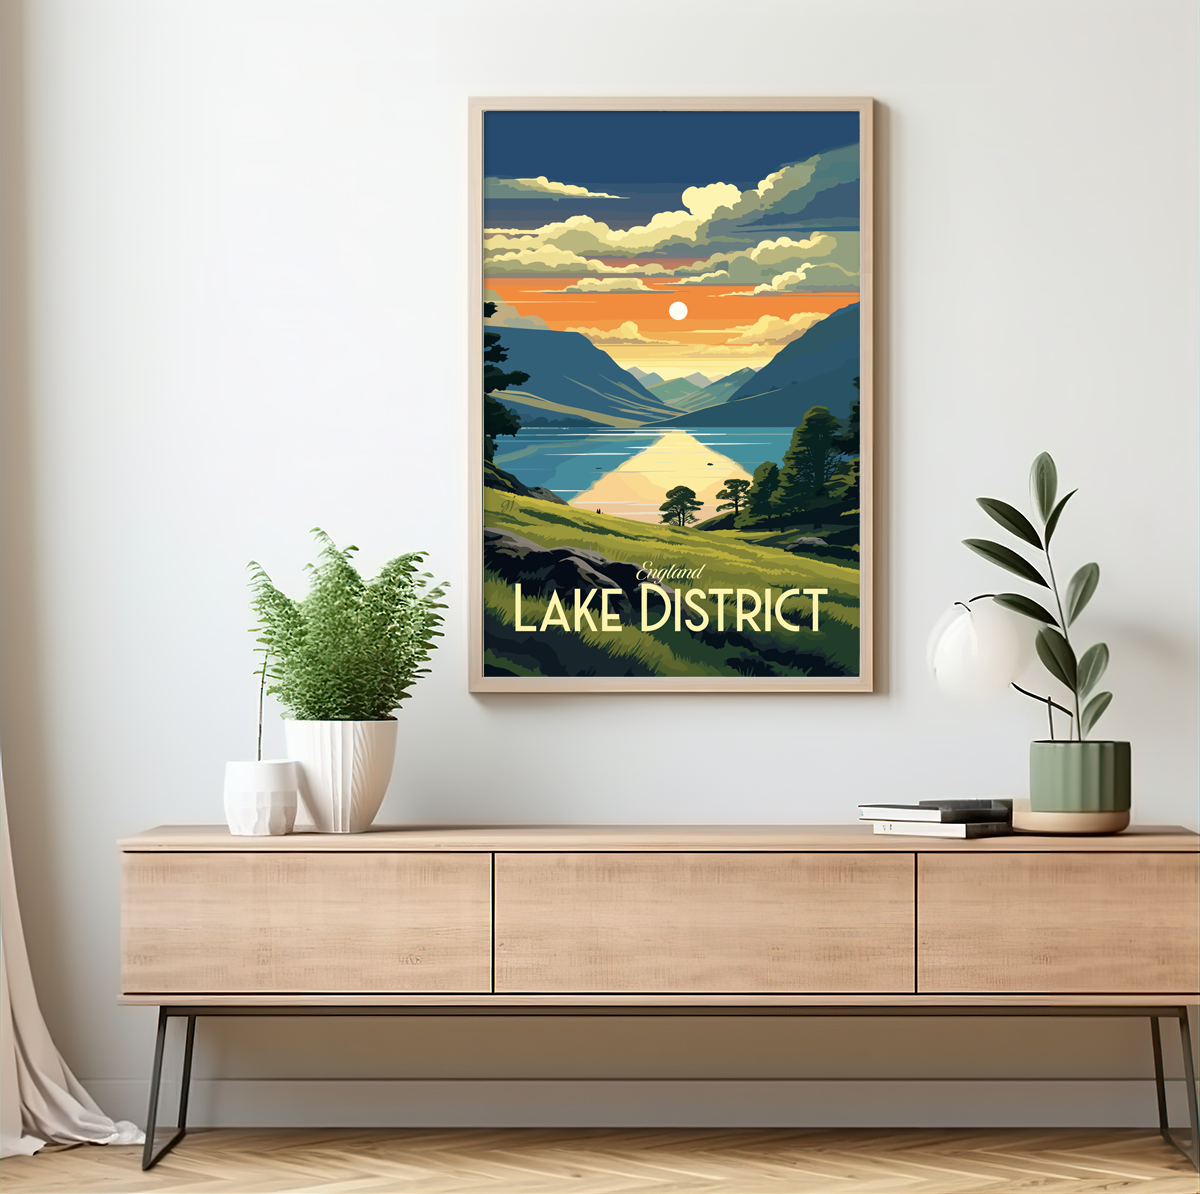 Lake District poster by bon voyage design